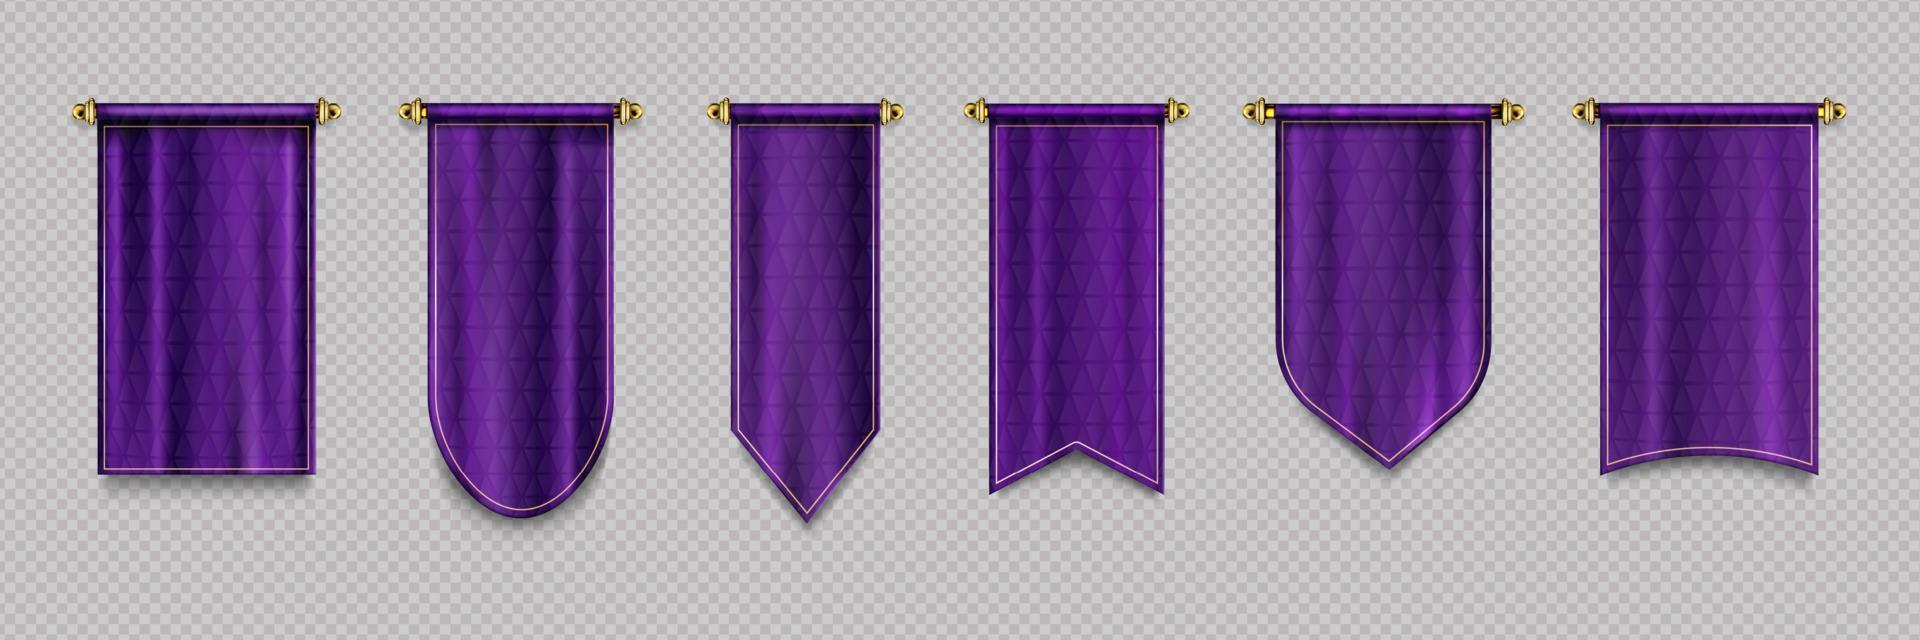 lila vimpel flaggor, täcke textil- hängen vektor